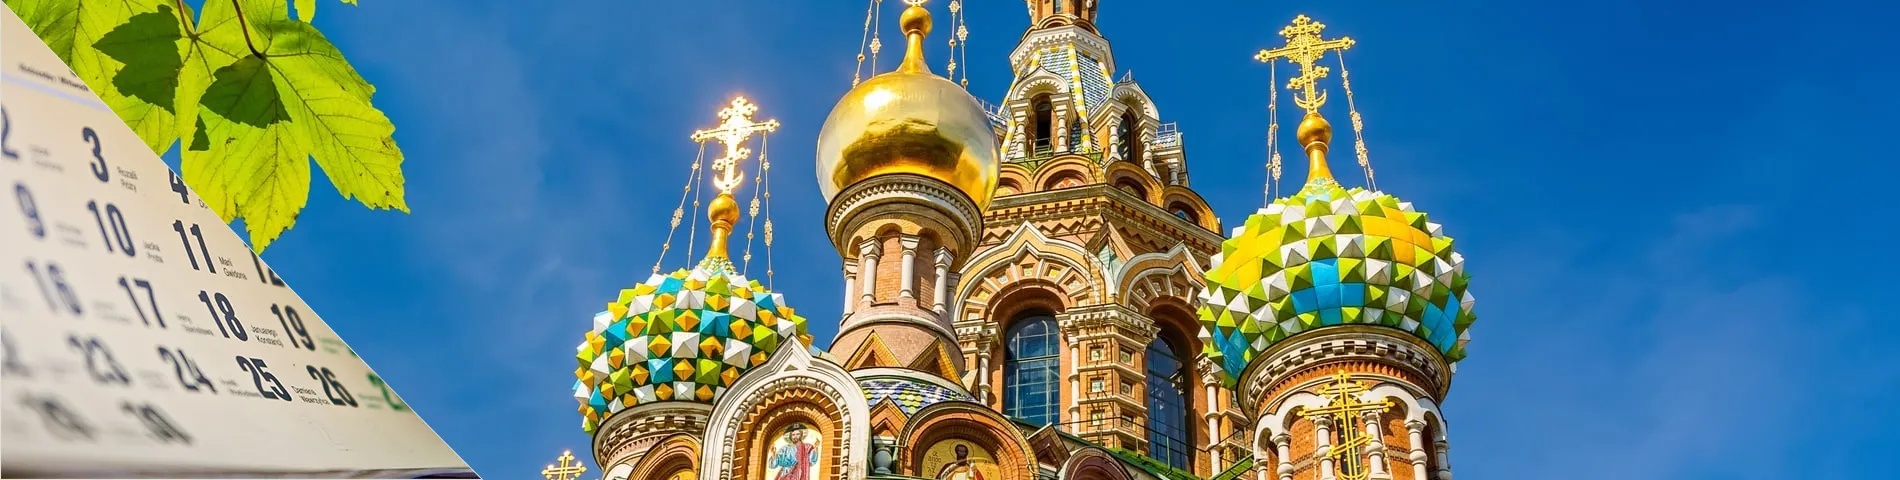 Санкт-Петербург - Языковой год (6-12 месяцев)